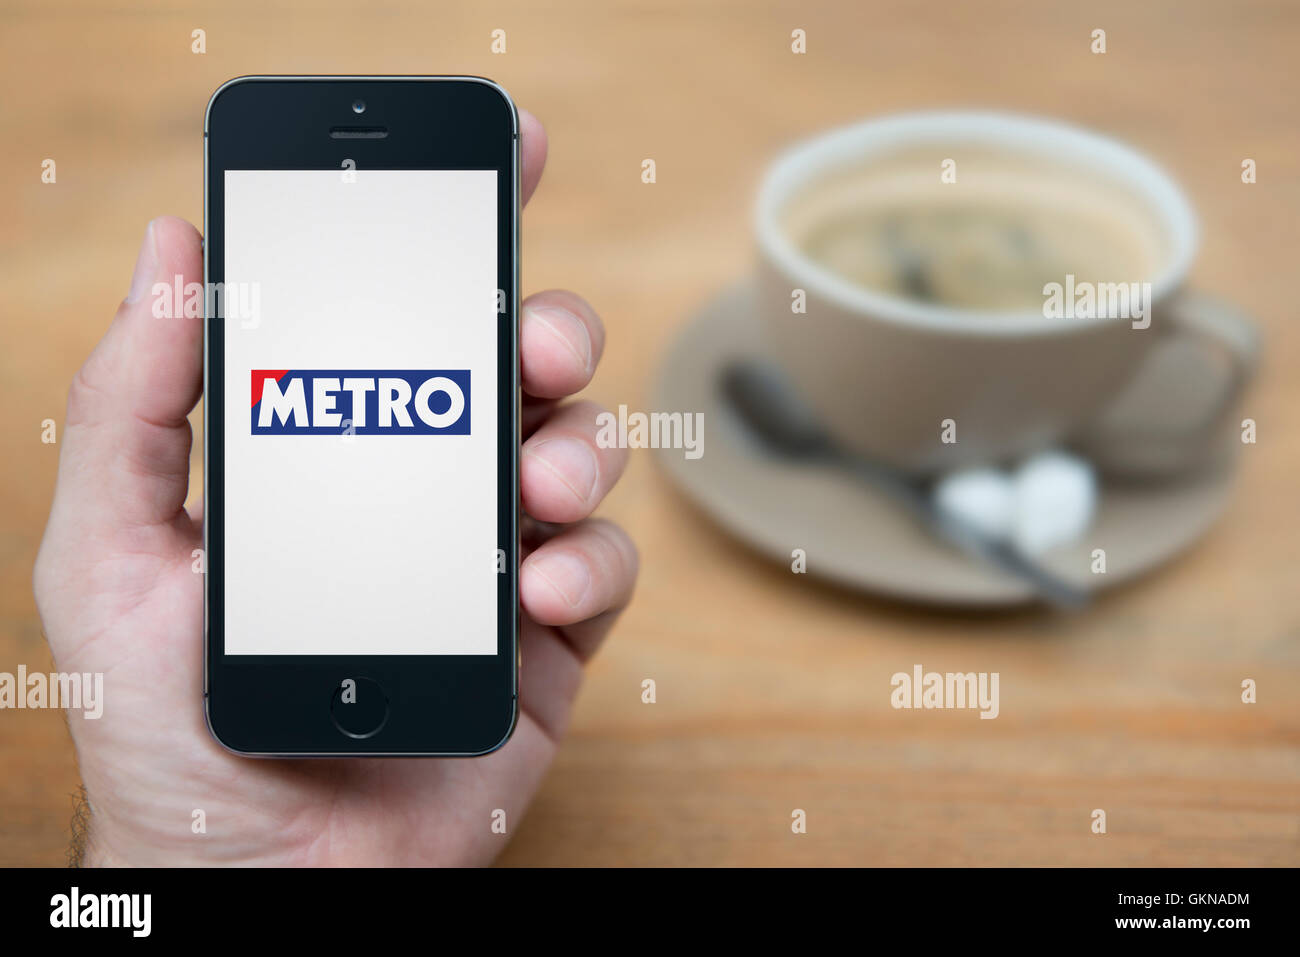 Ein Mann schaut auf seinem iPhone die Metro-Logo anzeigt, während bei einer Tasse Kaffee (nur zur redaktionellen Verwendung) saß. Stockfoto